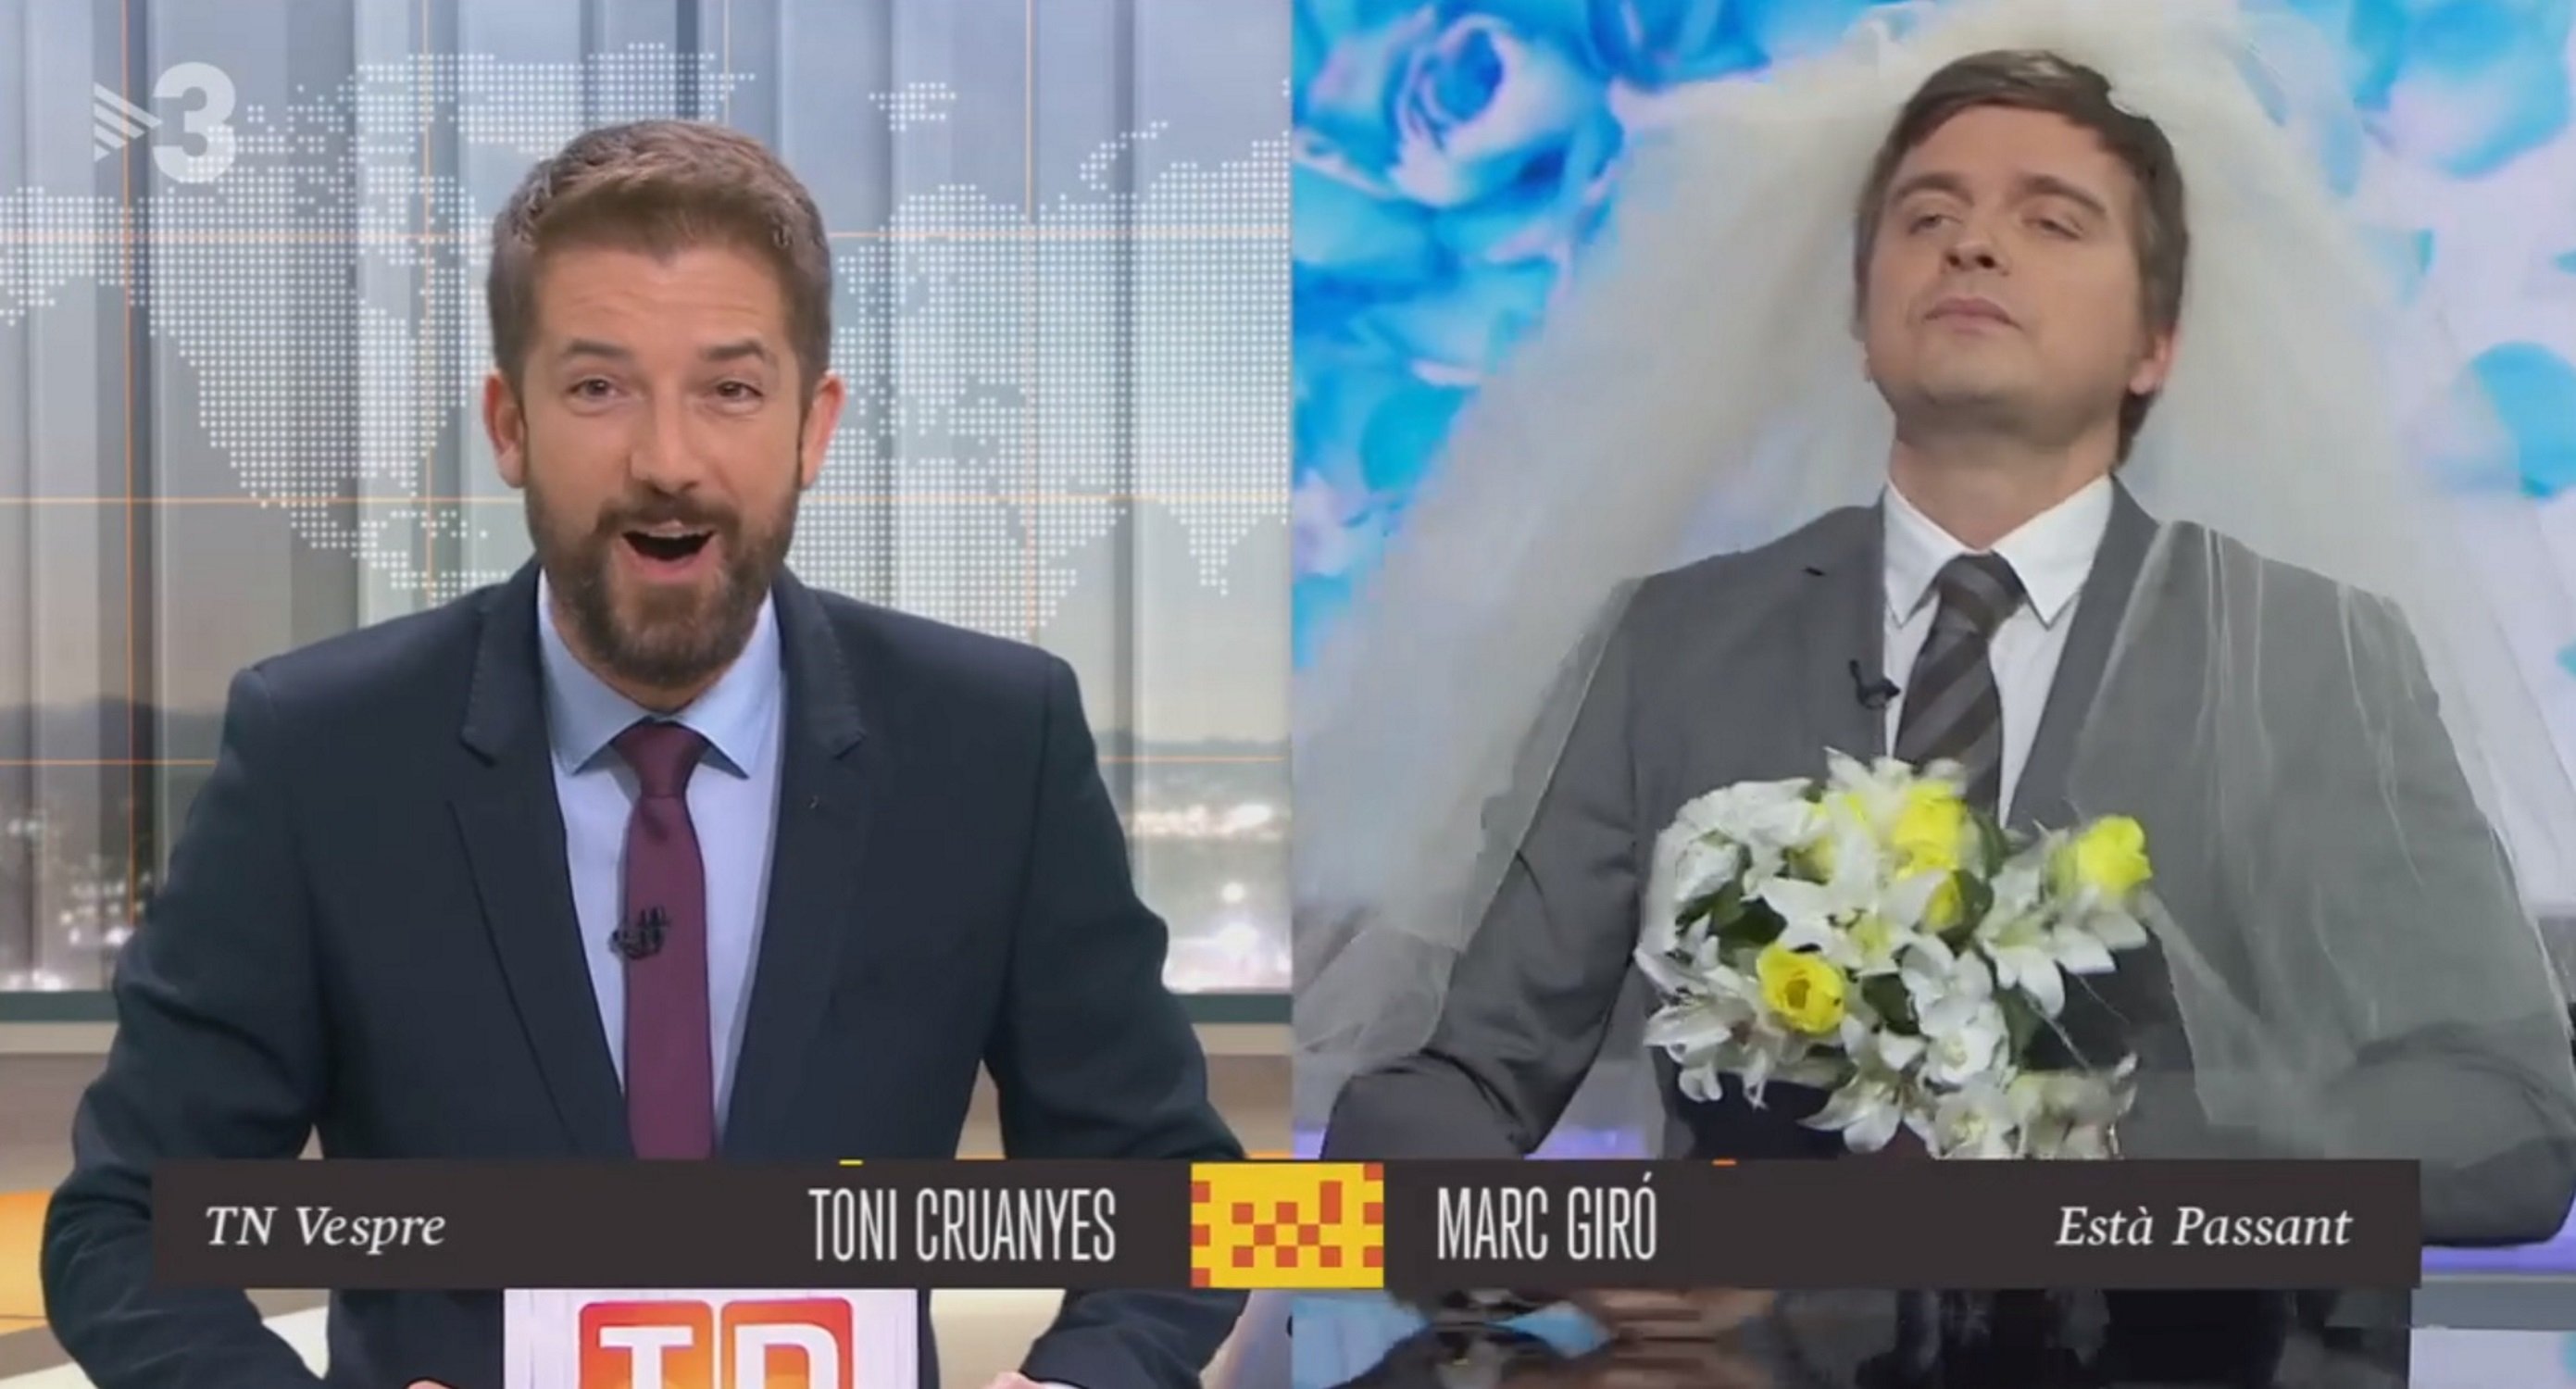 Marc Giró, de novia, le pide matrimonio a un presentador de TV3 en un gag hilarante